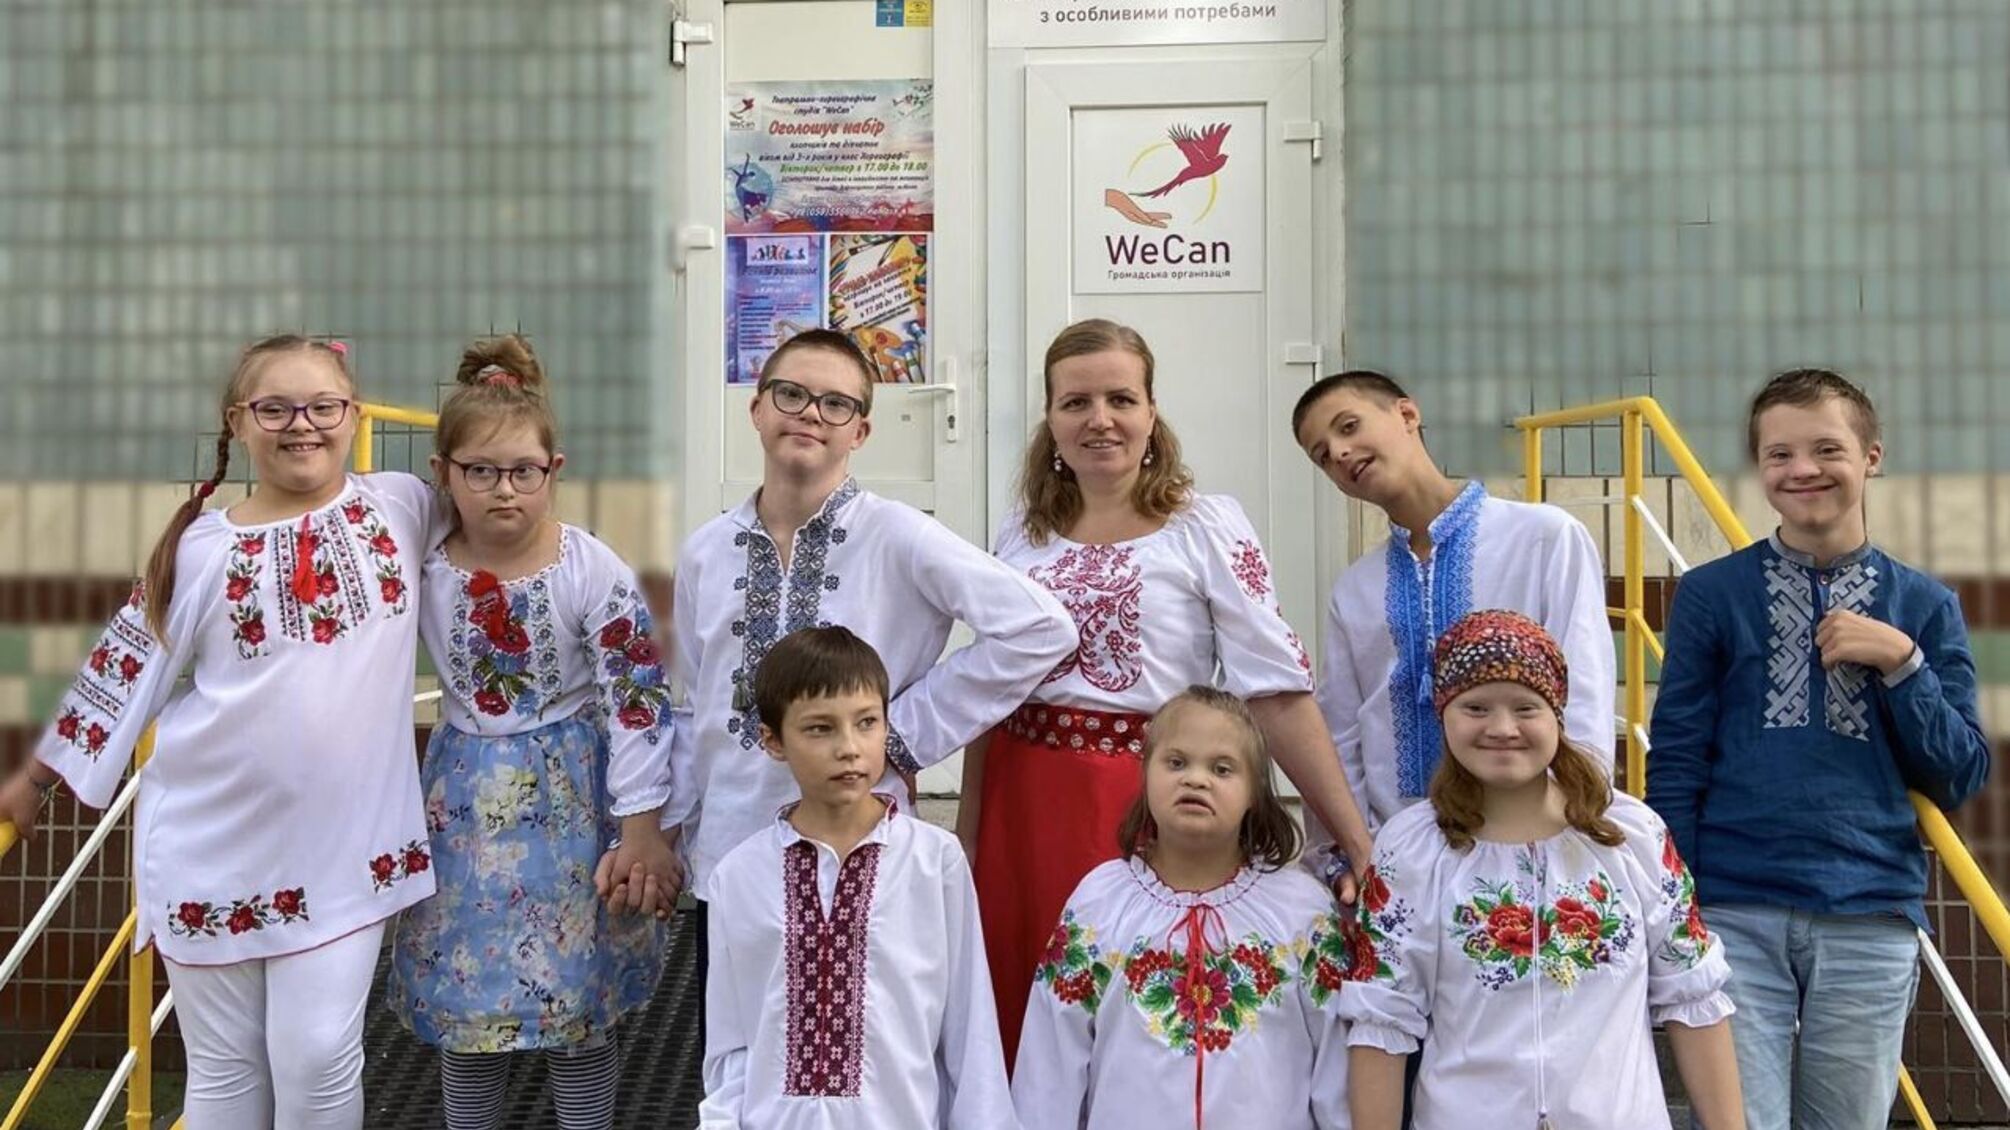 В Киеве инициативные родители собственными силами создали школу для детей с особыми потребностями: история ОО 'Wecan'